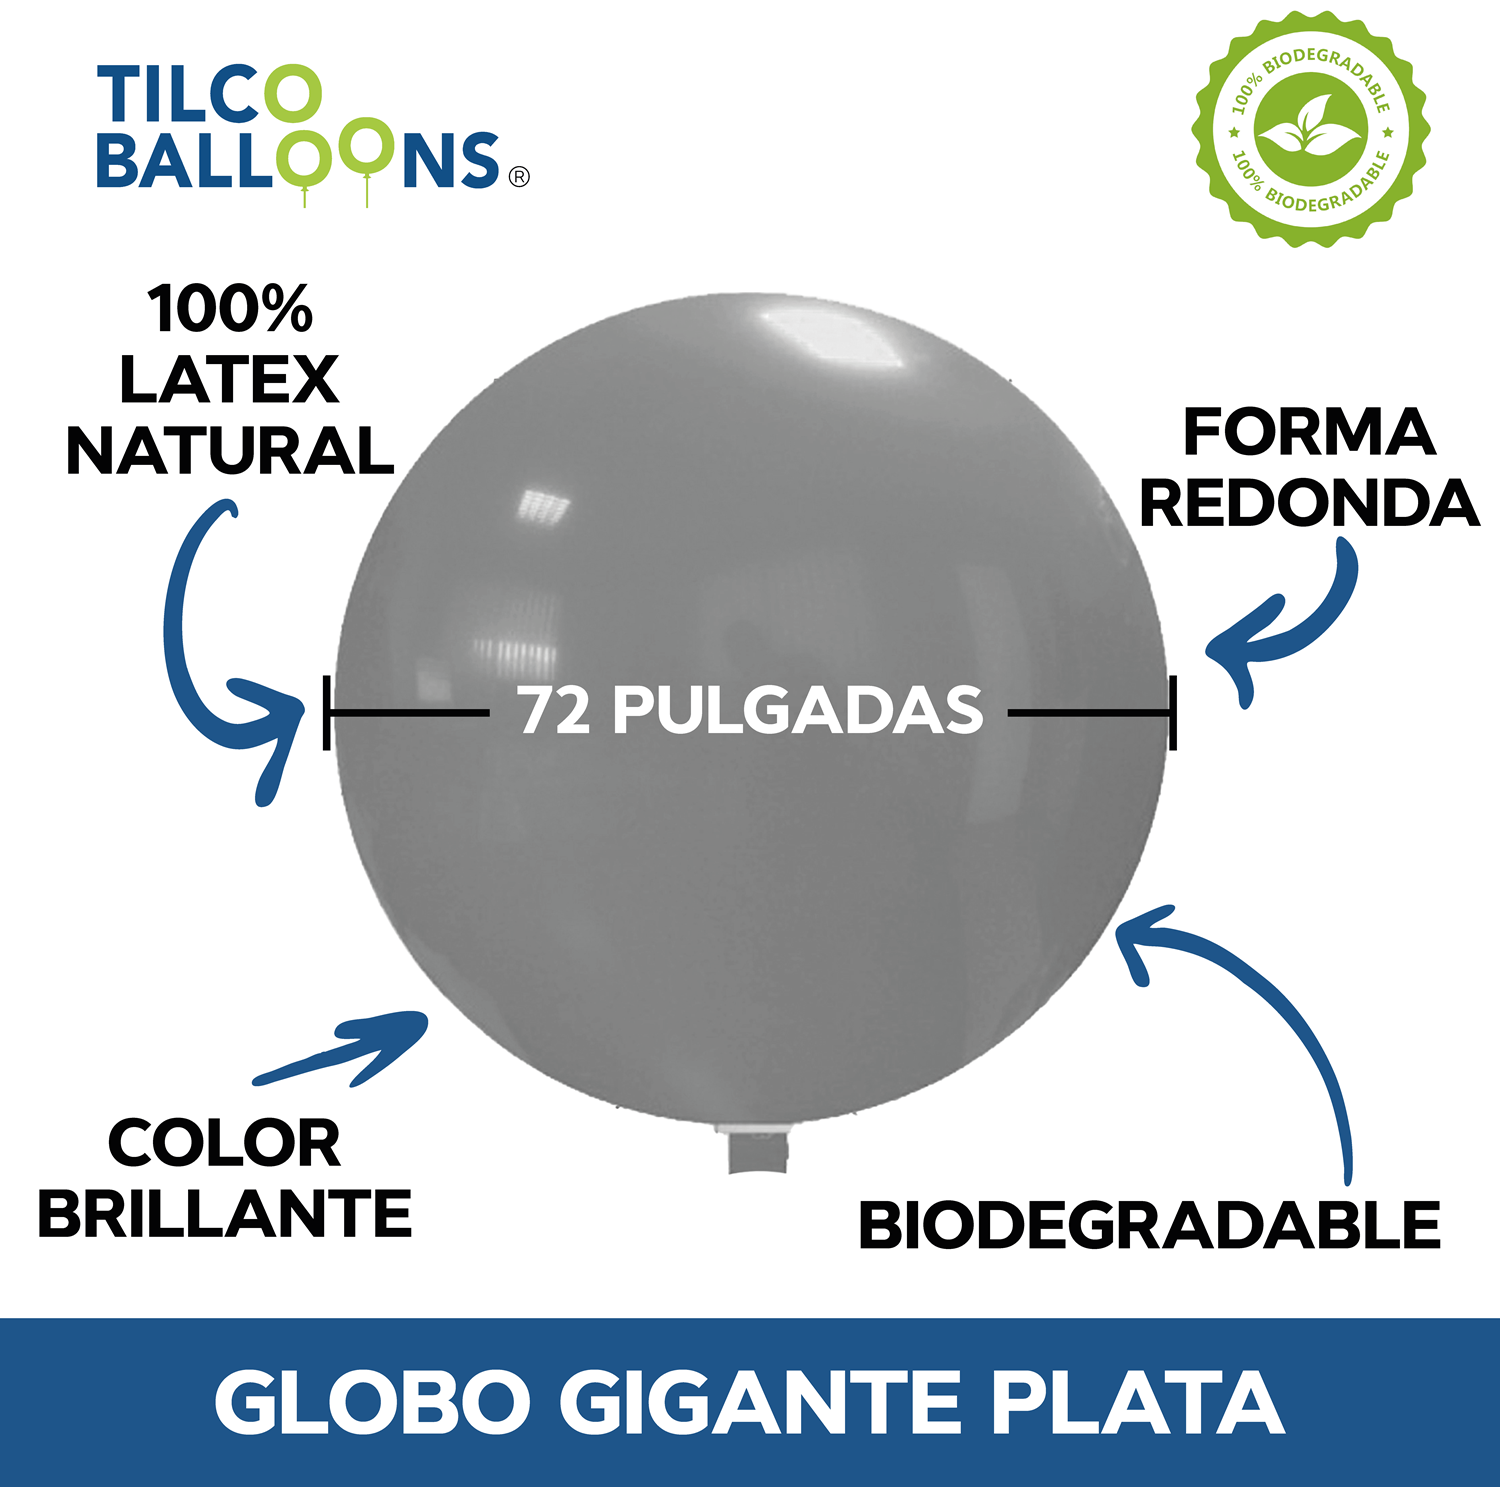 Globos gigantes morados de 72 pulgadas (40 pzas) - Tilco Balloons